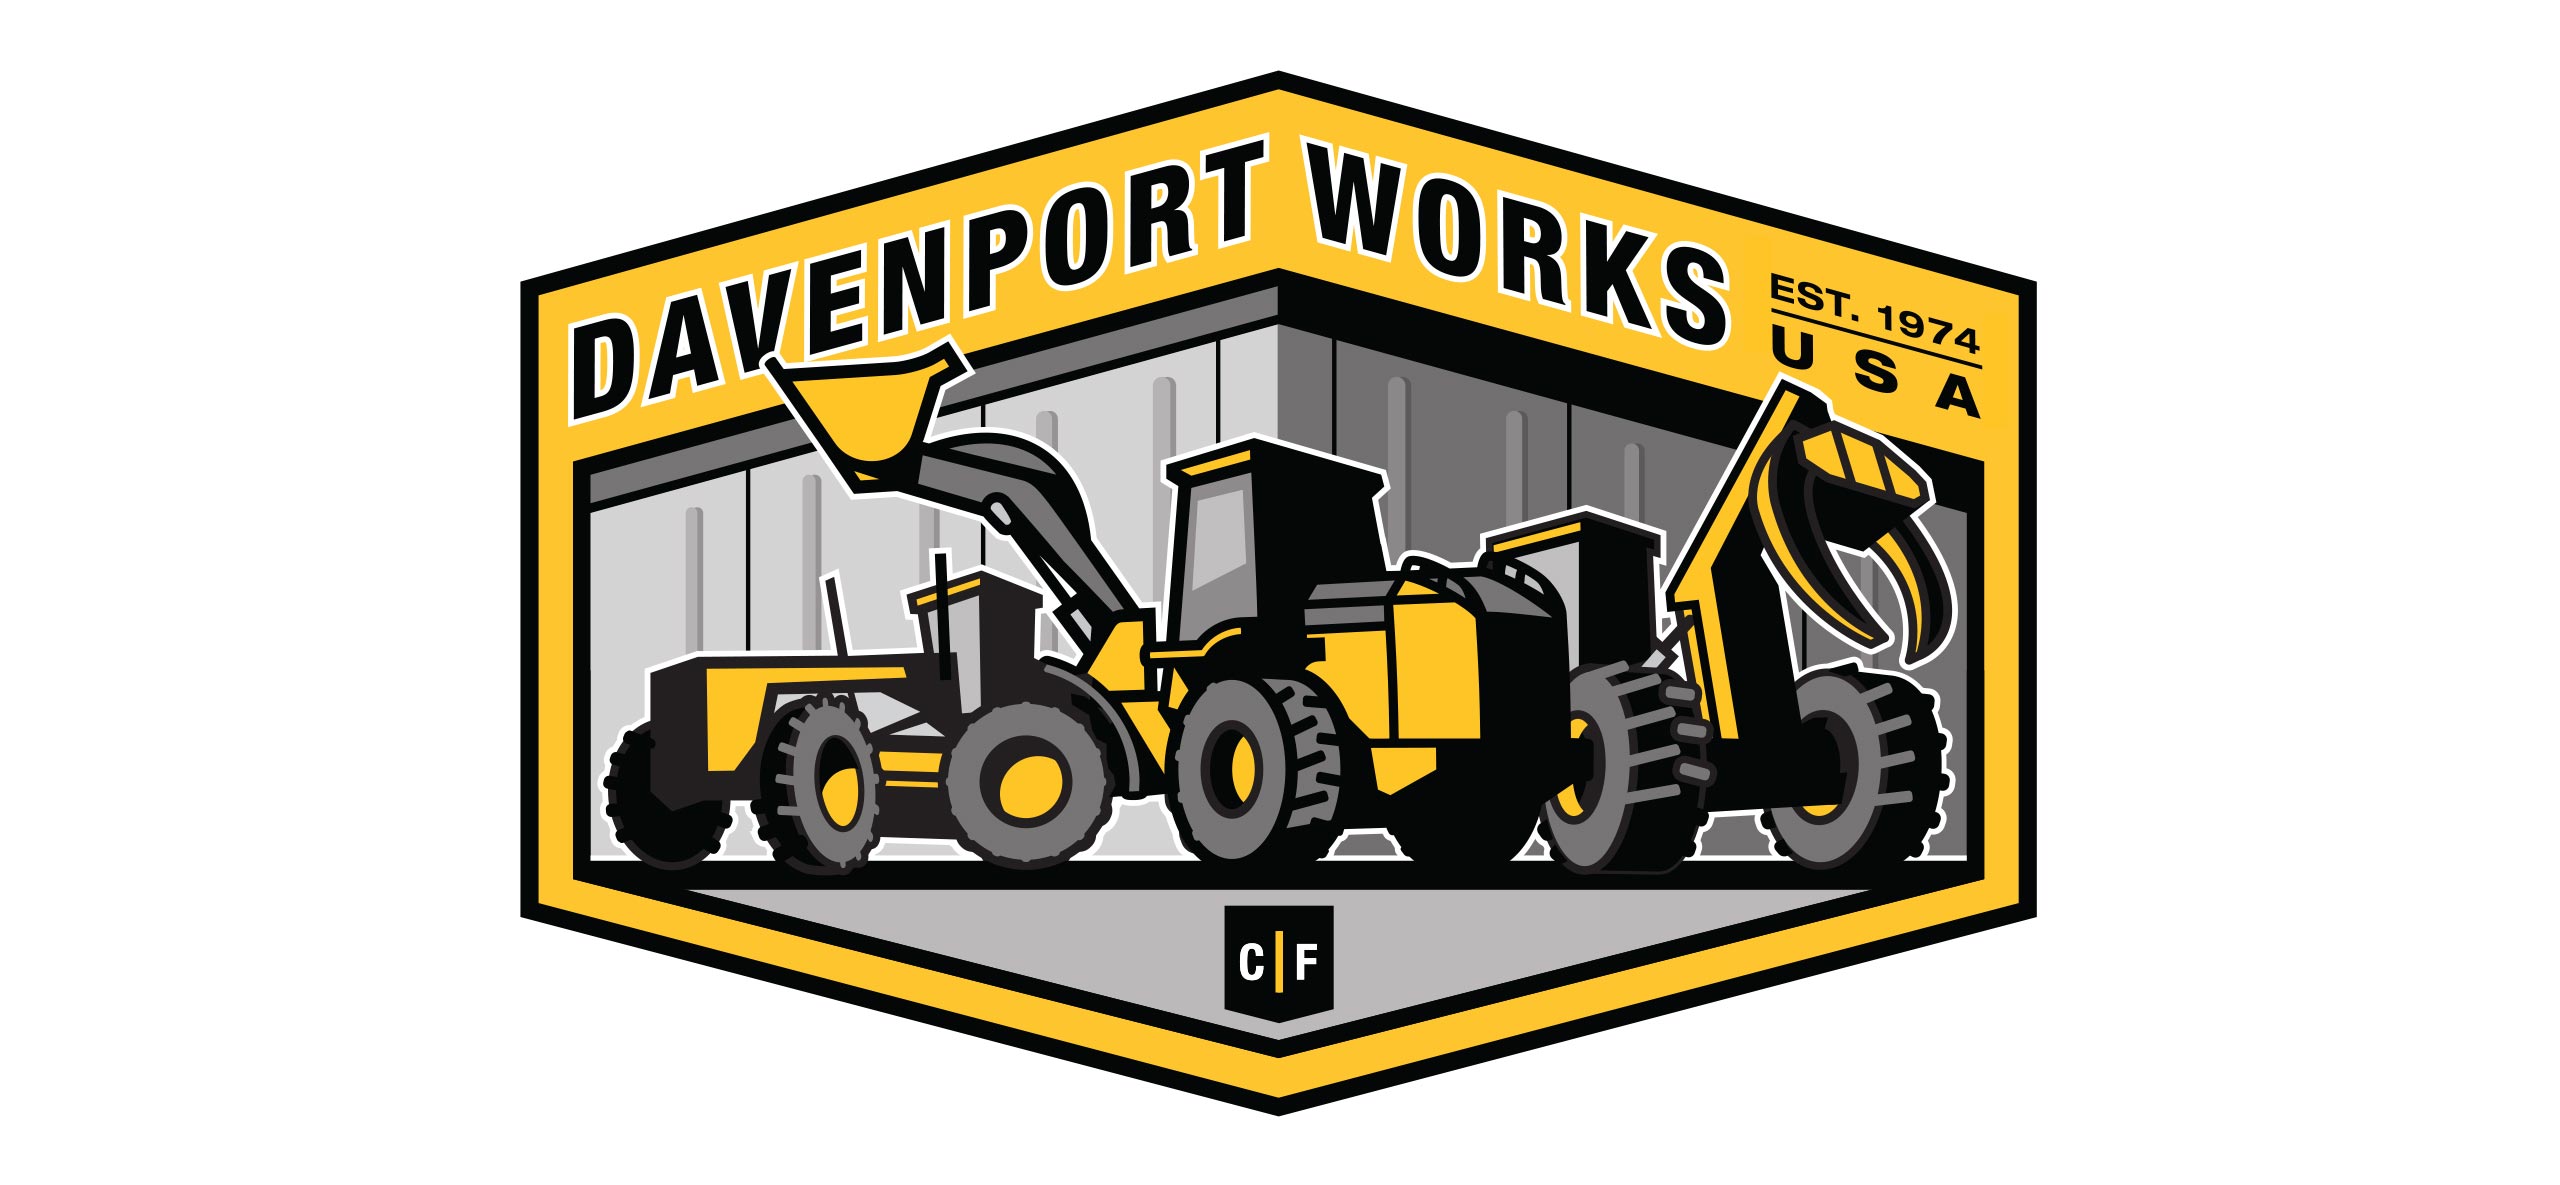 John Deere Construction's Davenport Works badge